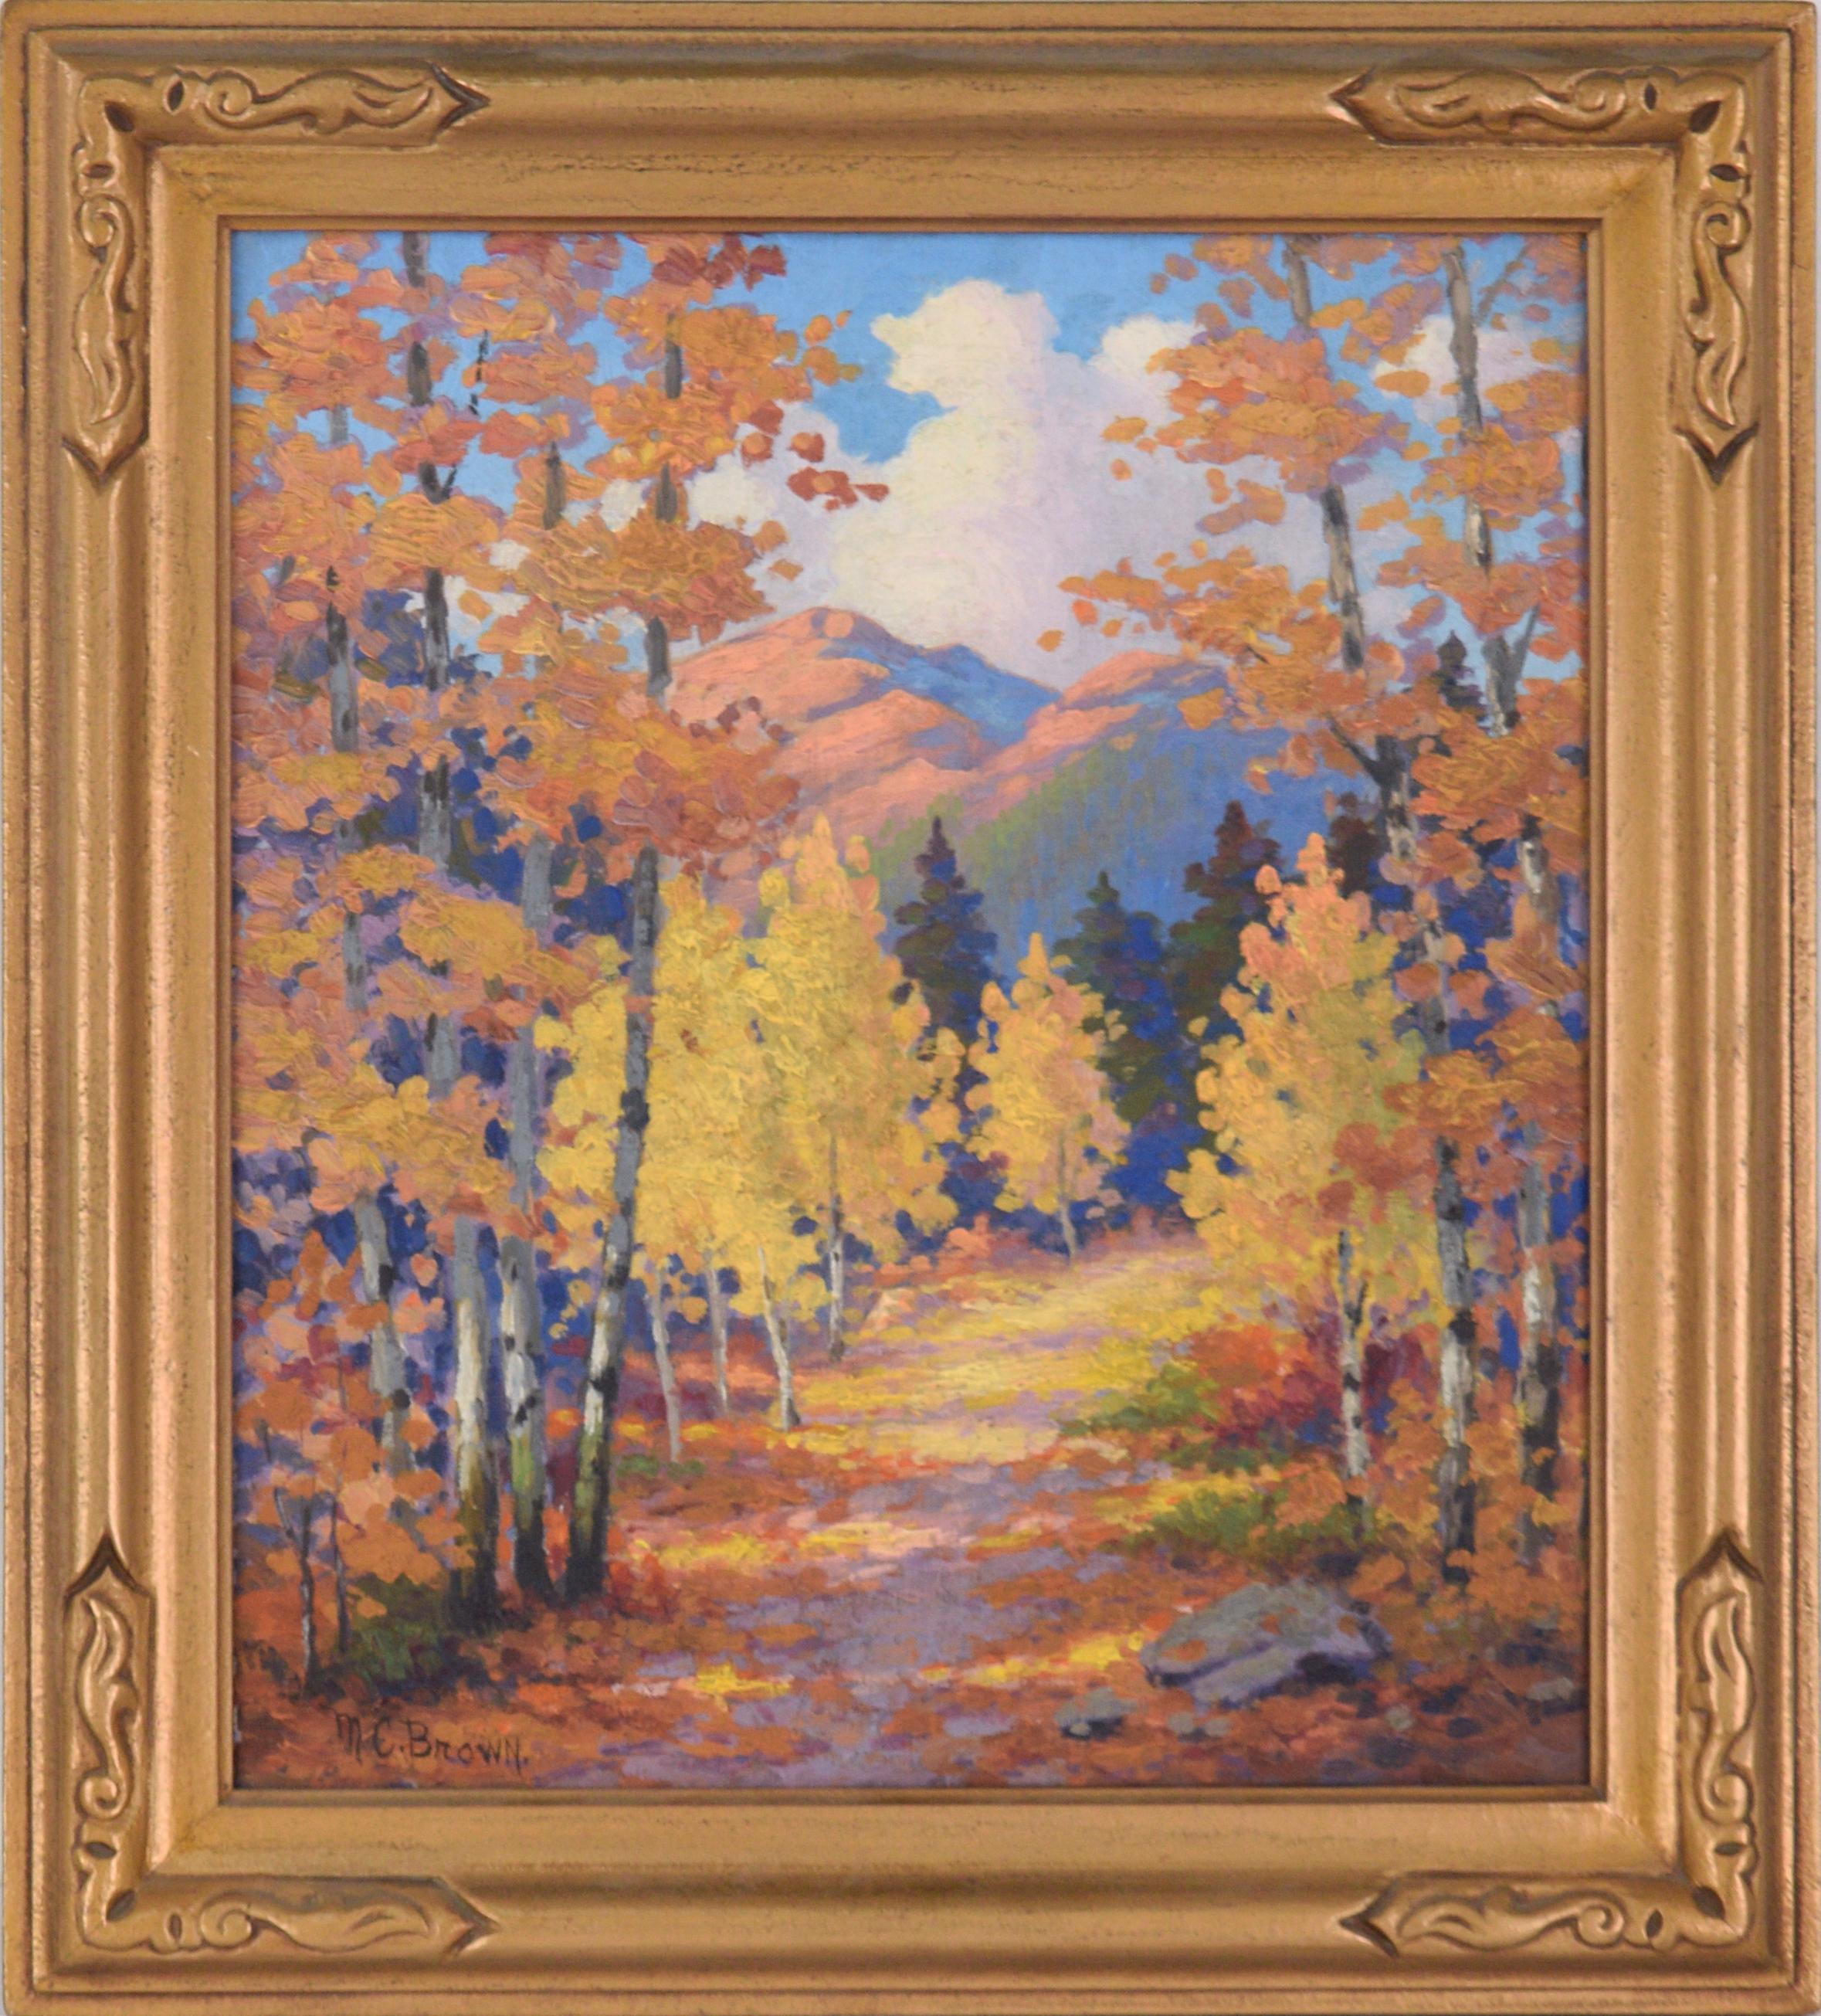 Landscape Painting MC Brown - Feuilles tombées sur le chemin à Estes Park, Colorado - Paysage d'automne 1940